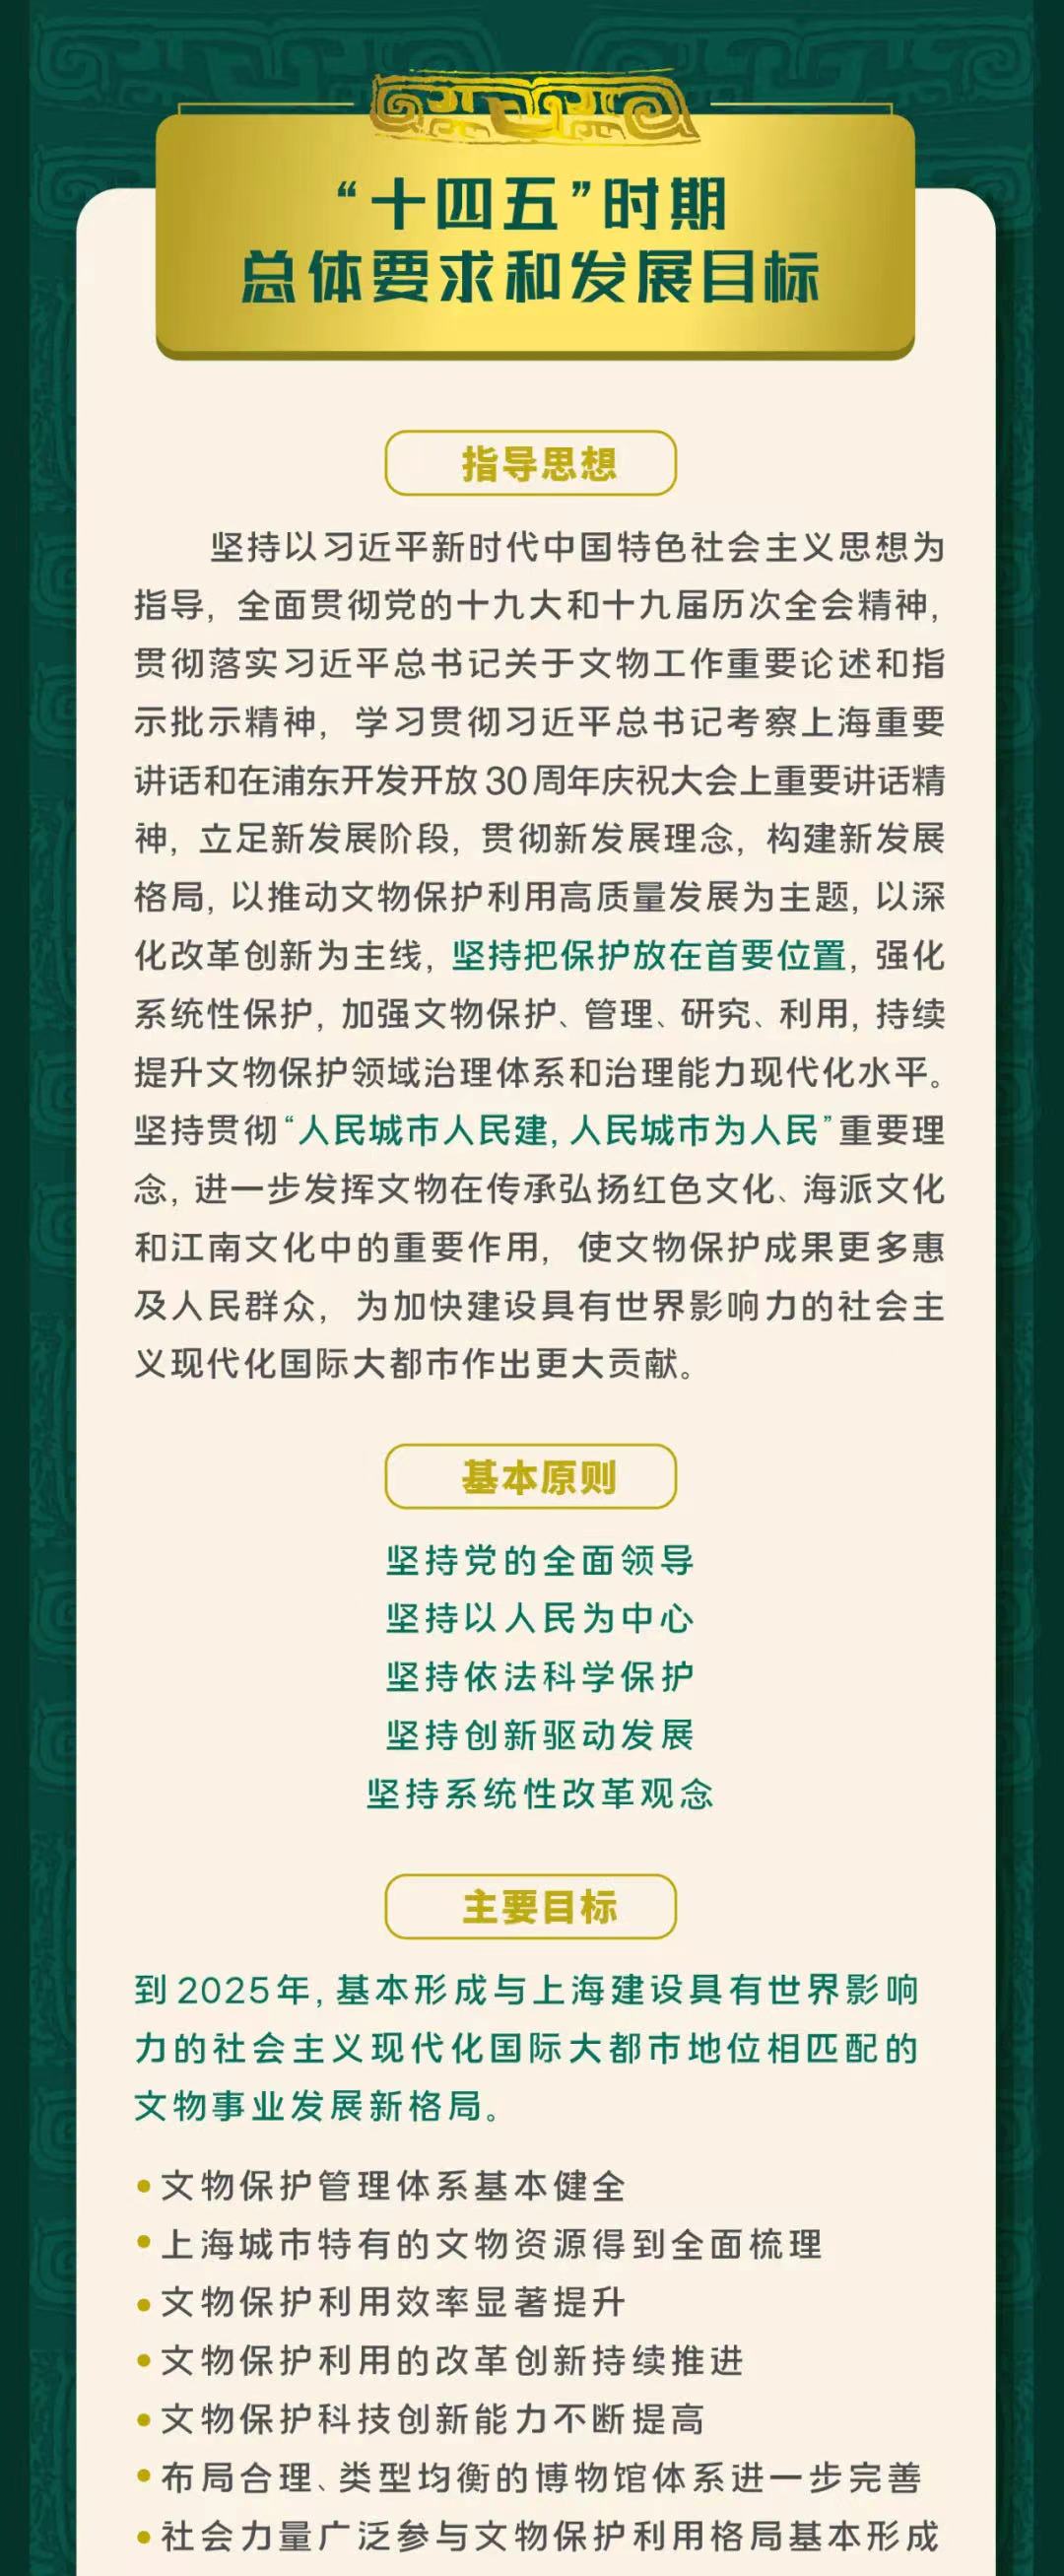 一图读懂上海市“十四五”文物保护利用规划3.jpg